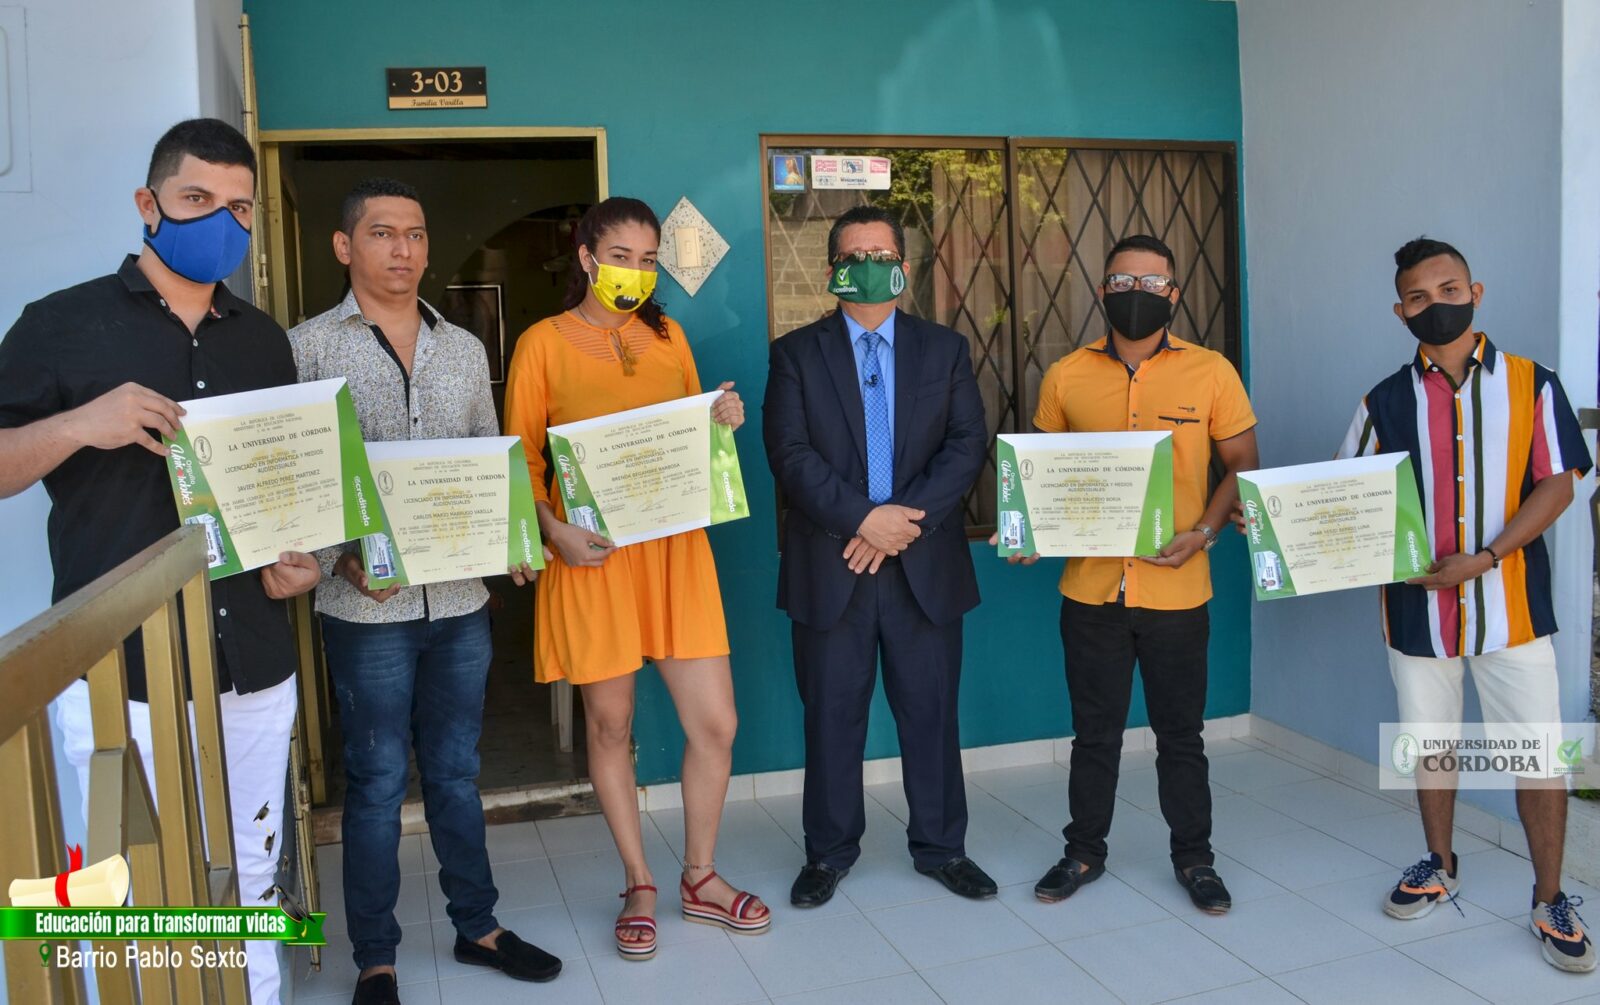  Diplomas a domicilio, UniCórdoba lleva el documento a la puerta de las casas de los recién graduados